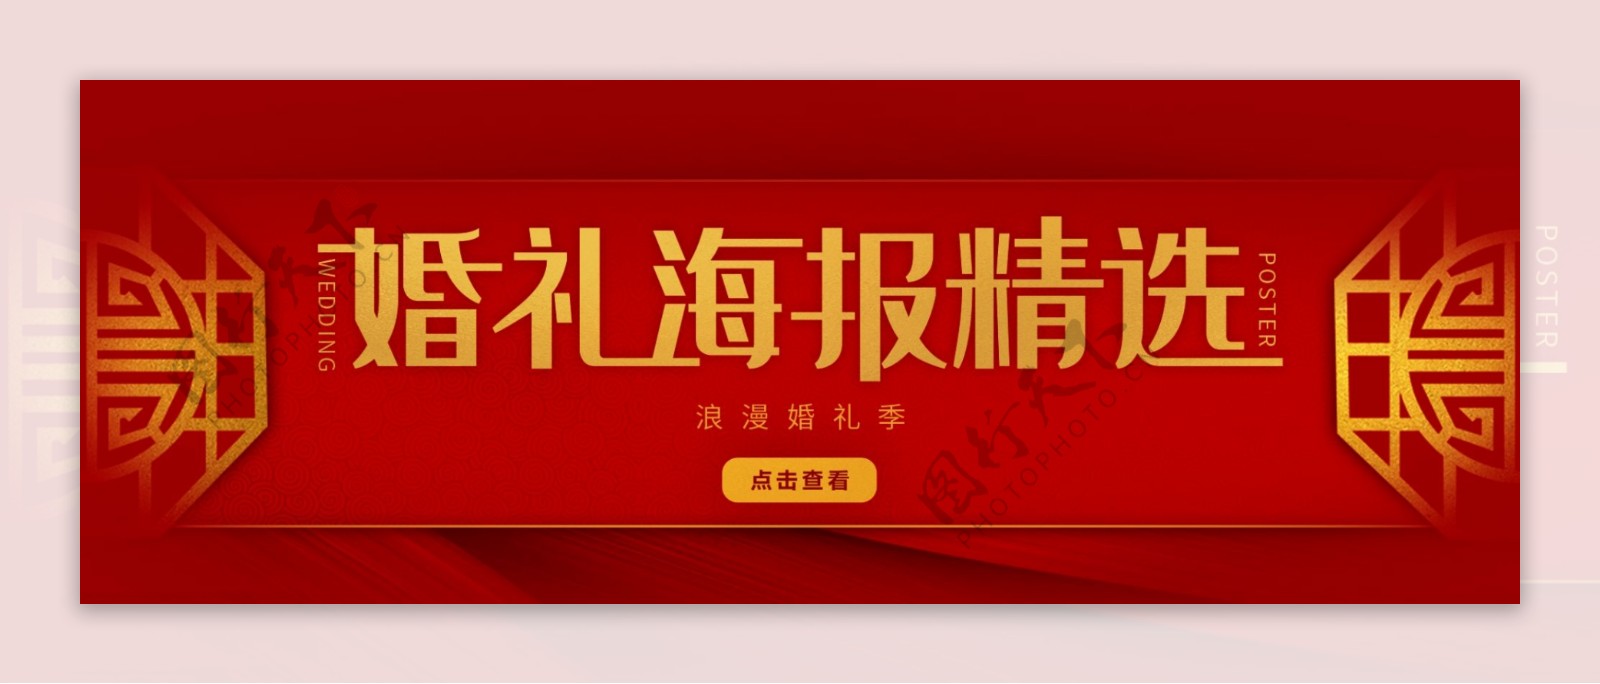 红色中国风浪漫婚礼季banner